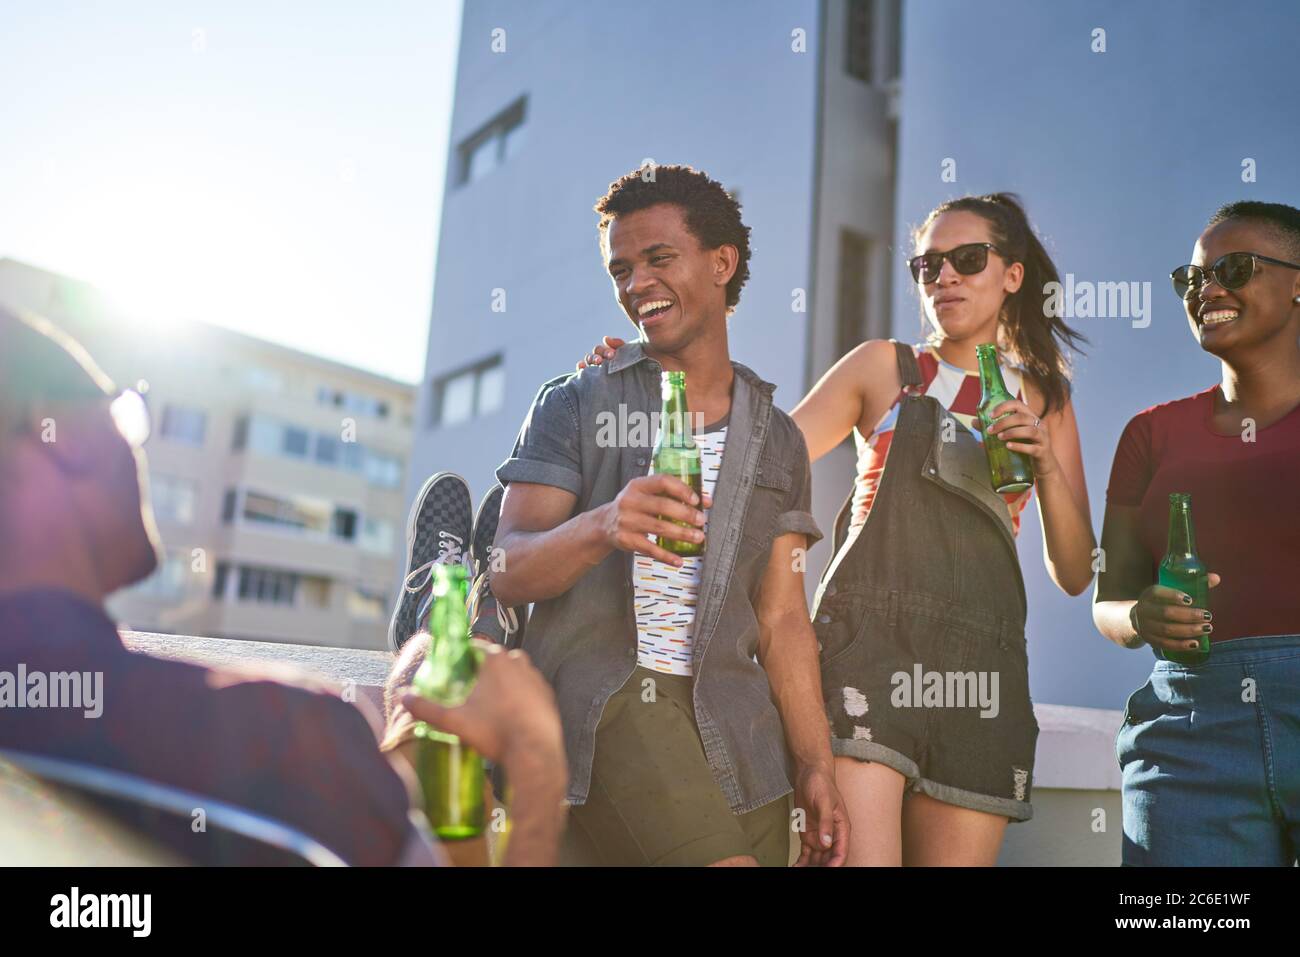 De jeunes amis heureux buvant de la bière sur un balcon urbain ensoleillé Banque D'Images